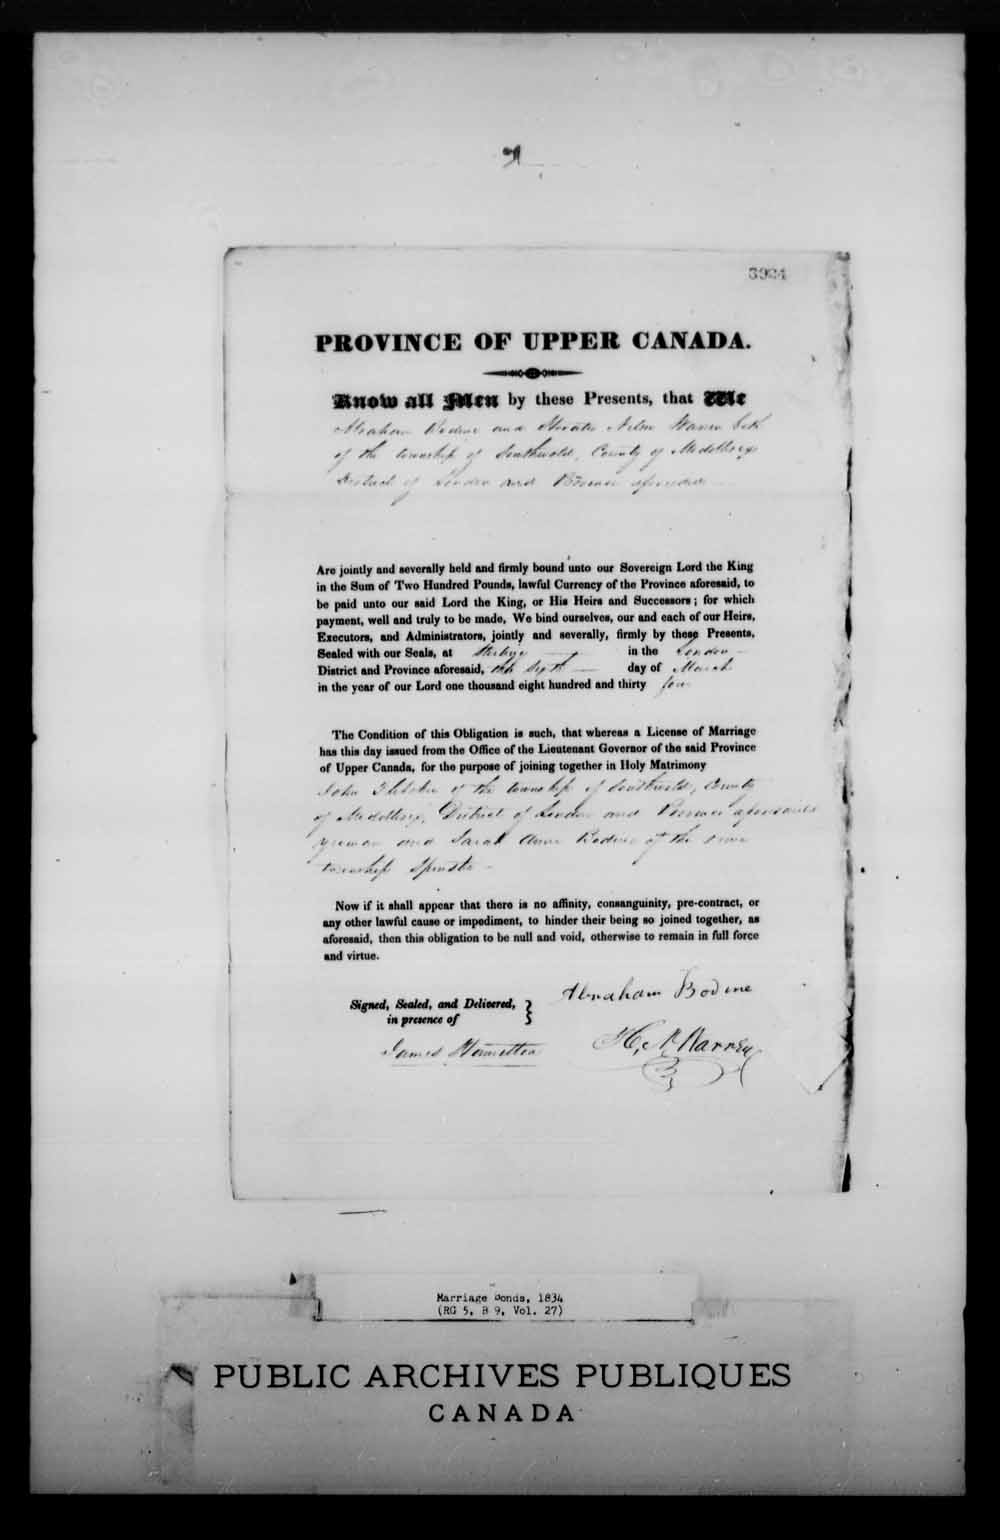 Page numérisé de Cautionnements de mariages pour le Haut-Canada et le Bas-Canada (1779-1865) pour l'image numéro: e008226137